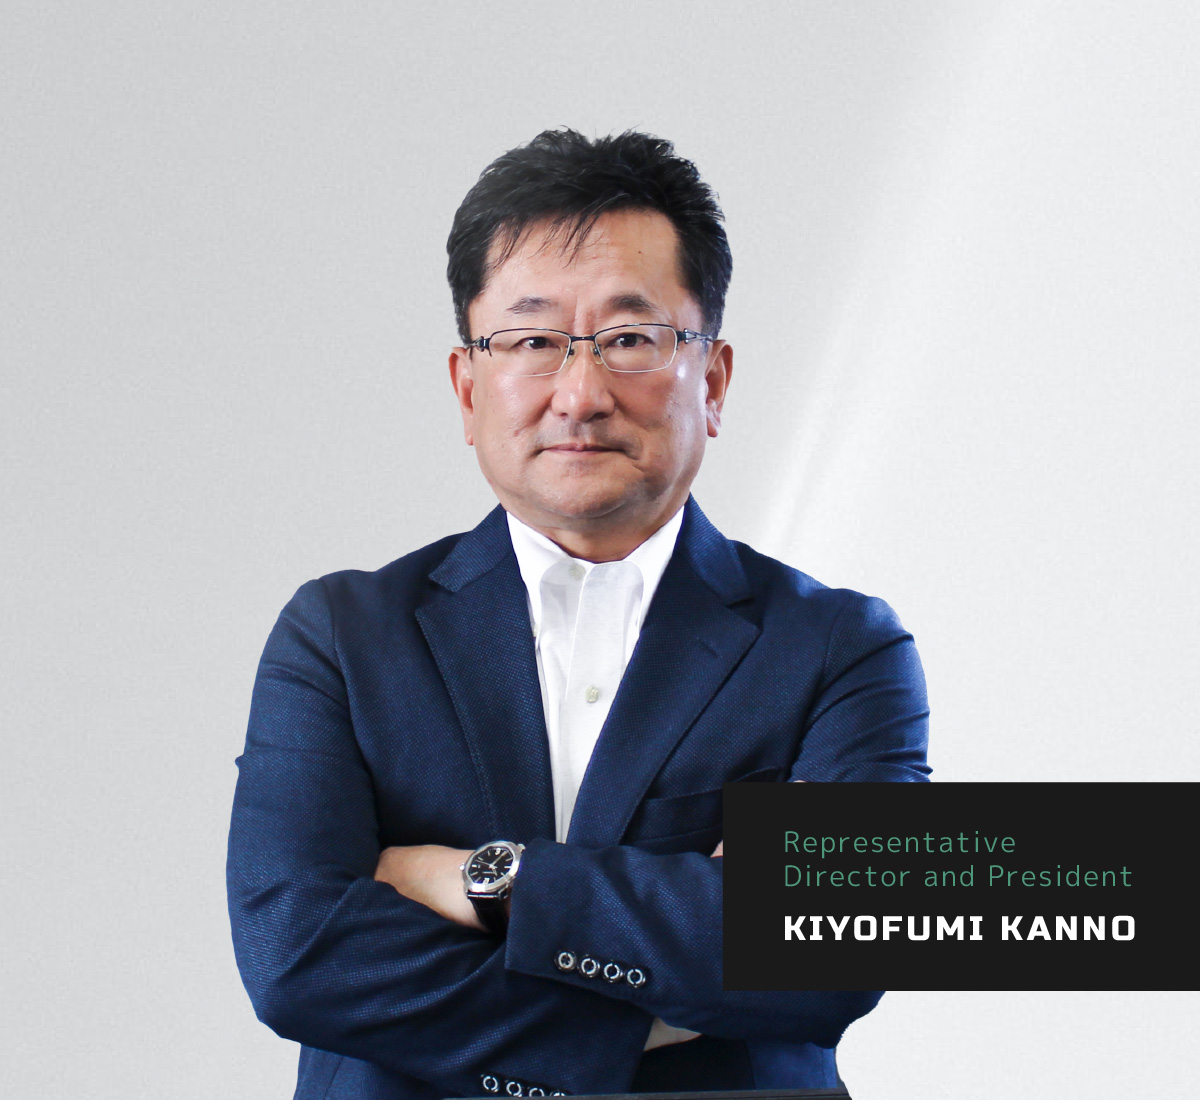 Representative Director and President Kiyofumi Kanno